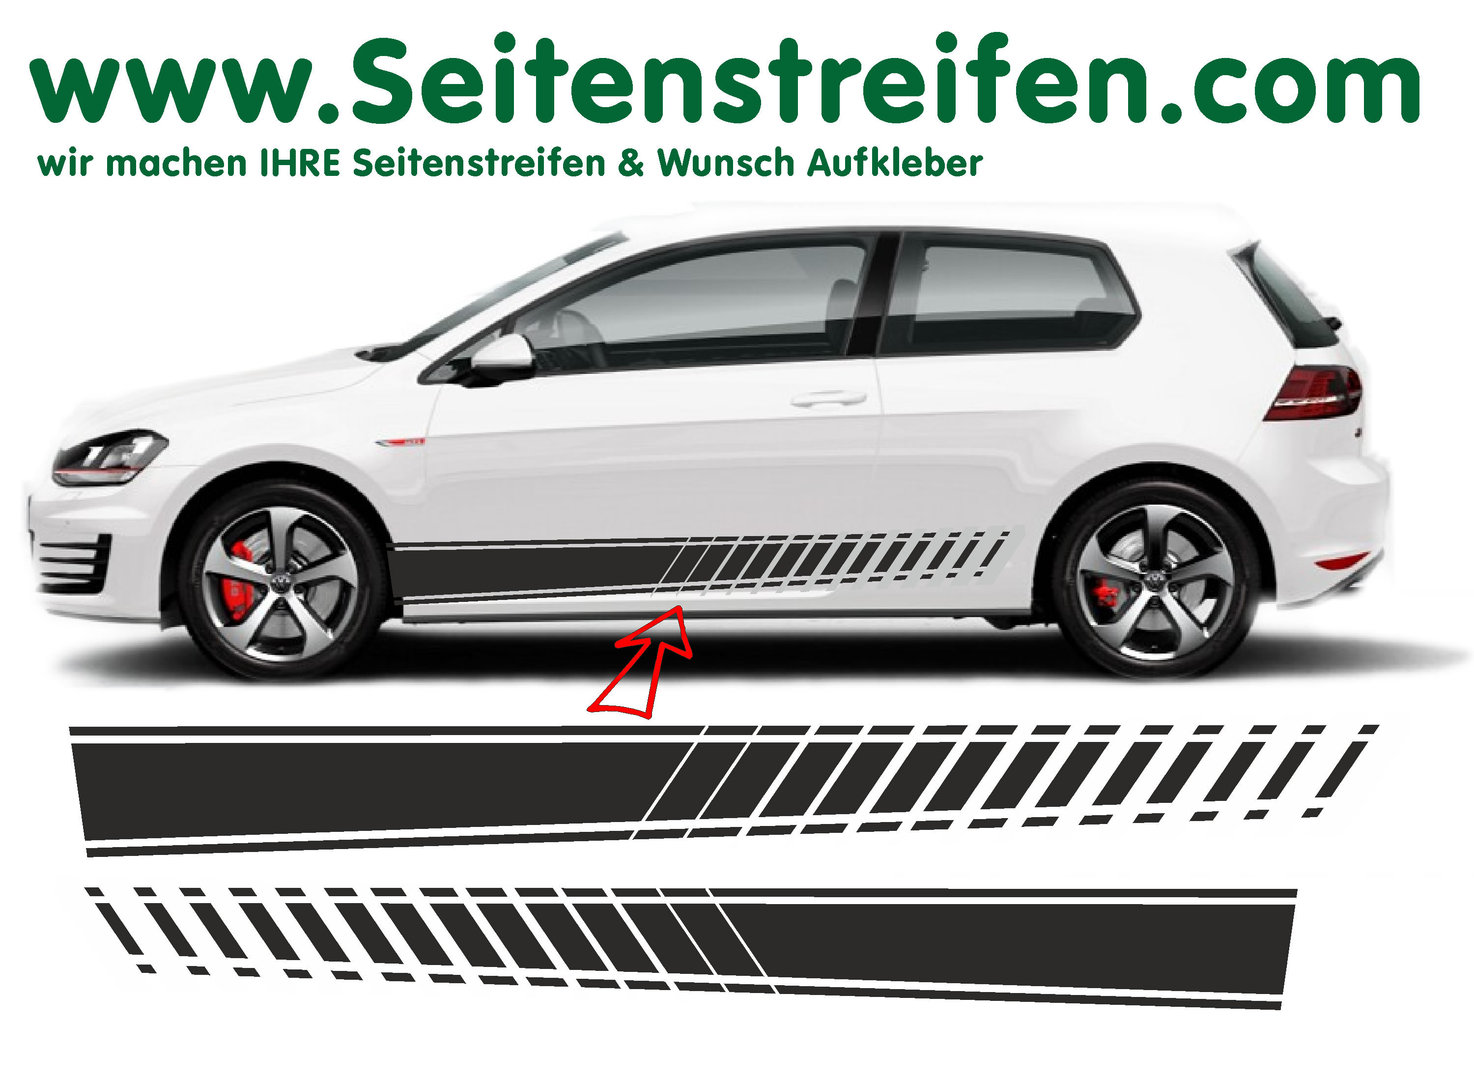 VW Golf EVO XL Seitenstreifen Aufkleber Set - für 3+4 Türer Nr.: 8504